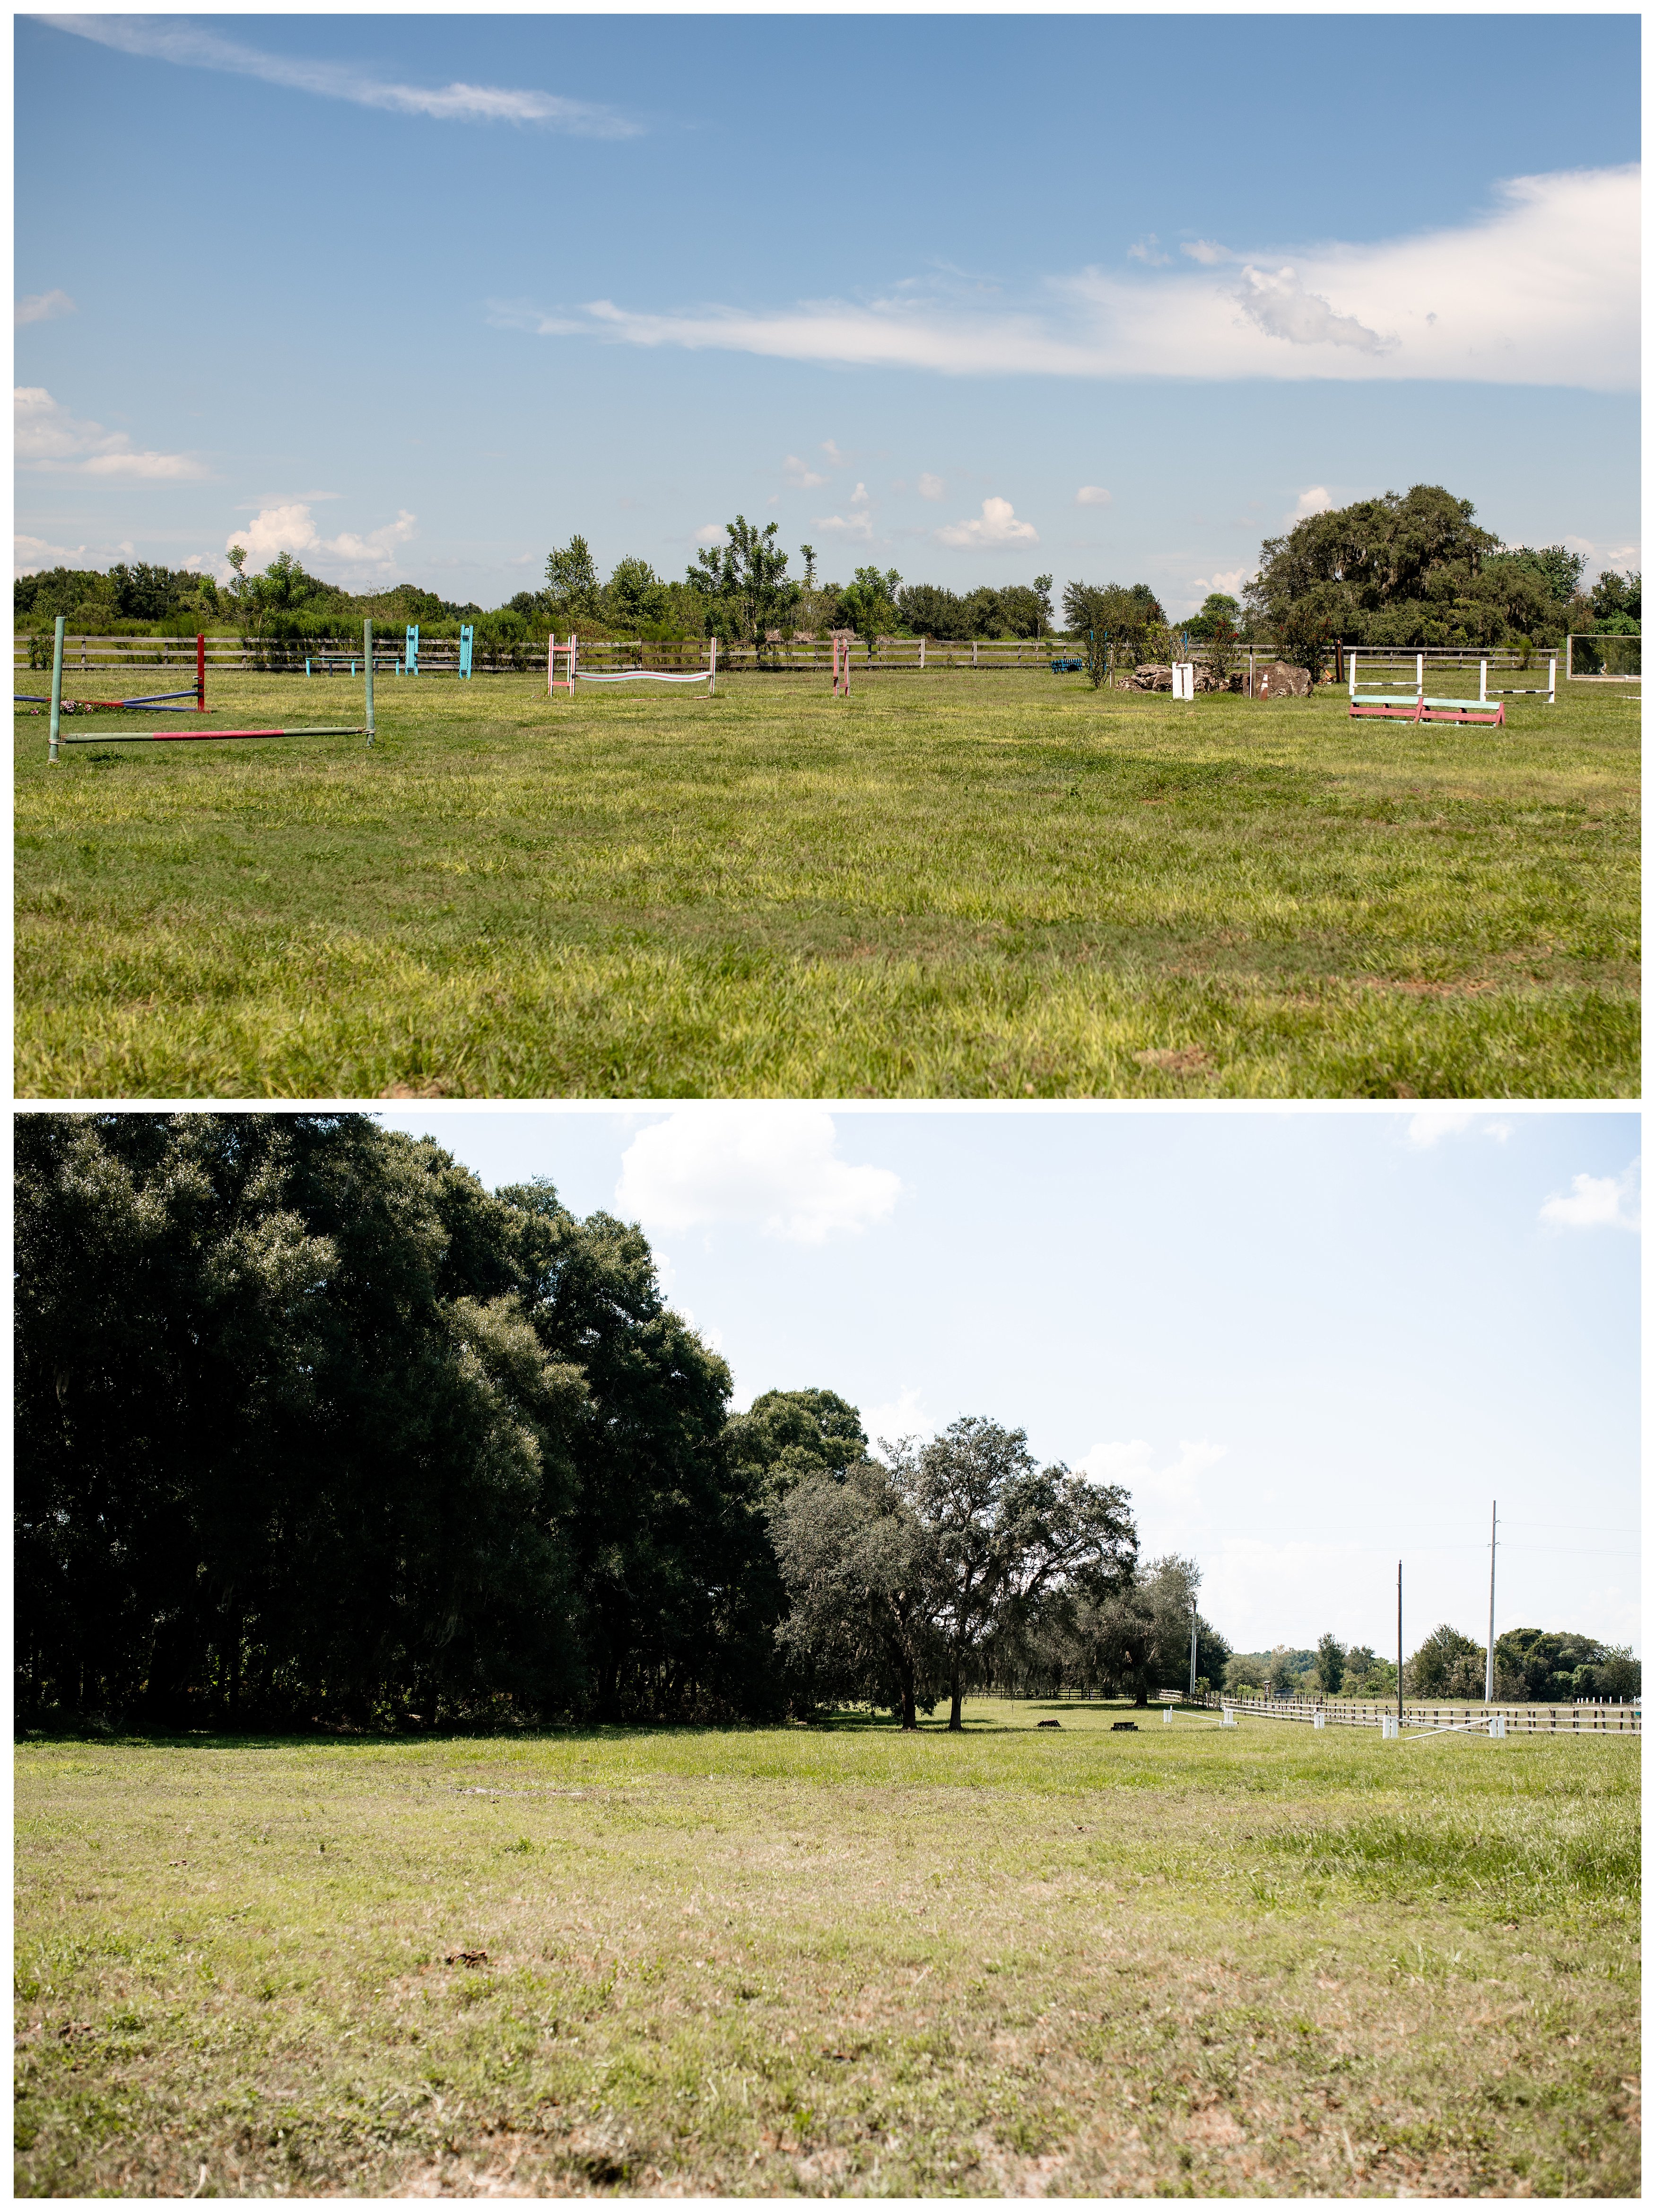 Lucious pastures at Run of Luck LLC near Ocala, Florida.